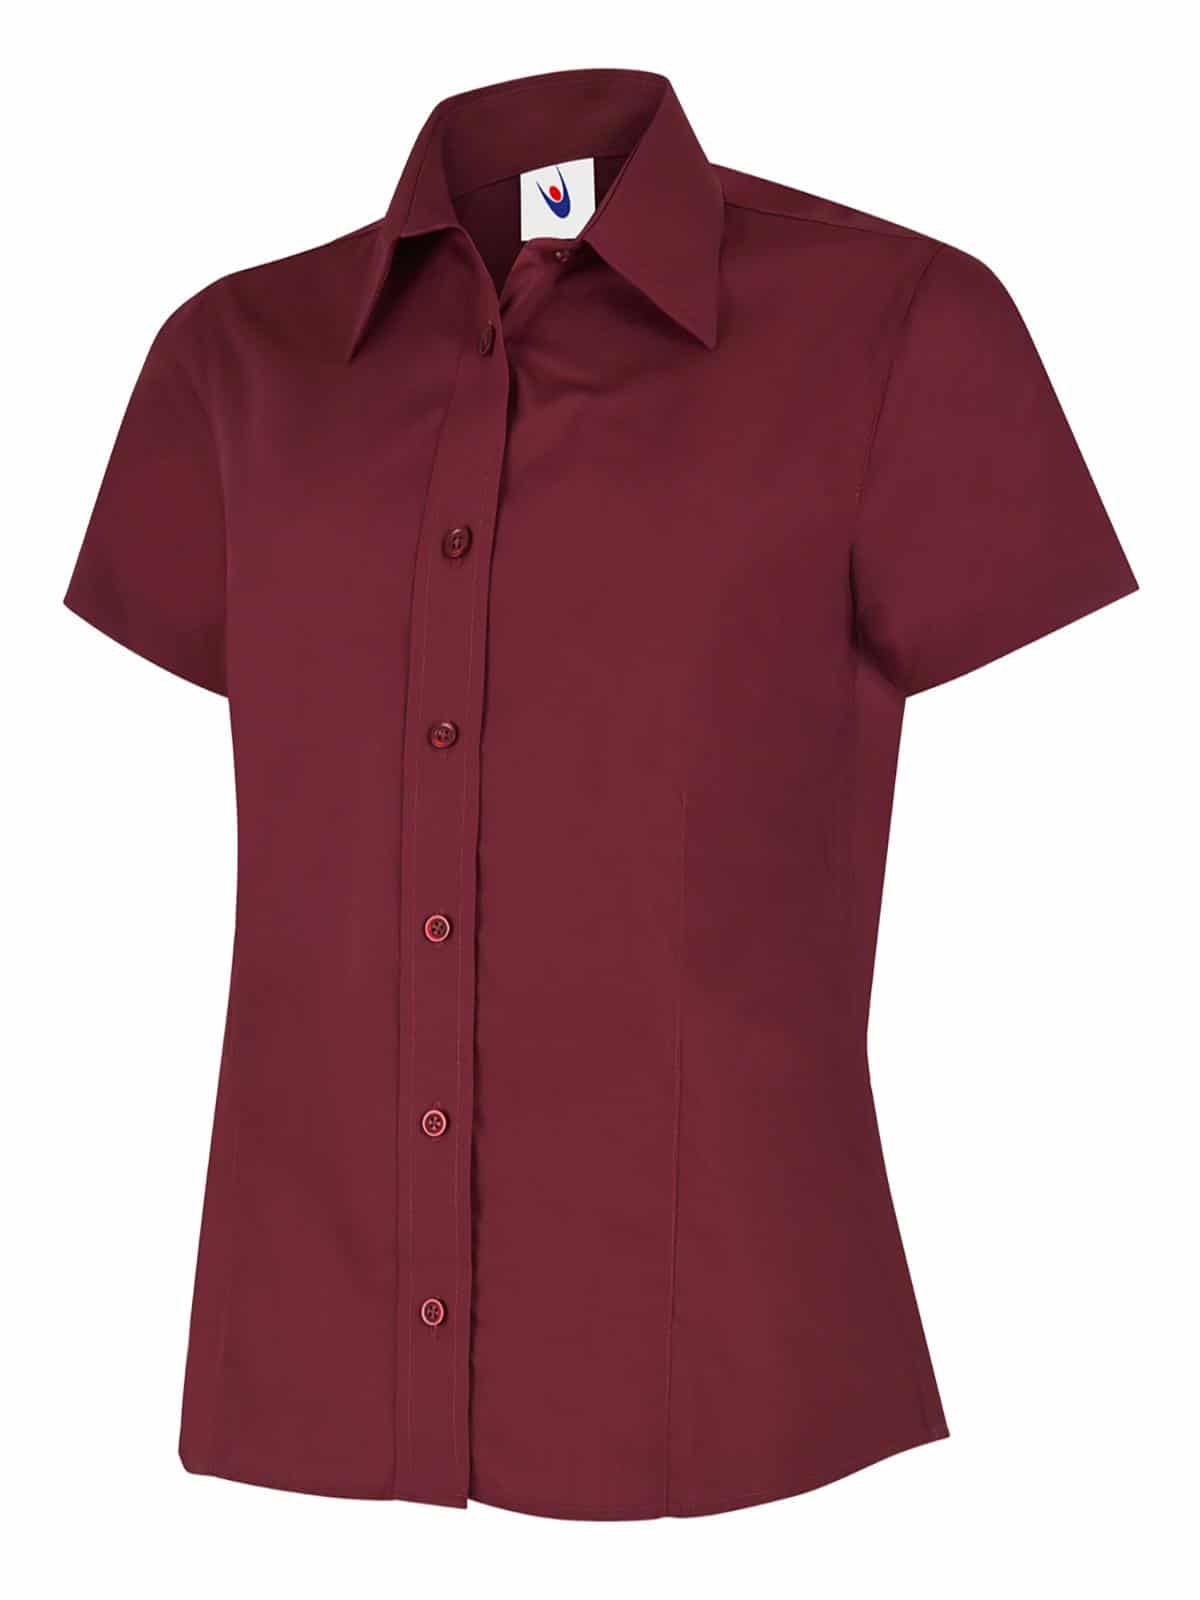 Uneek Poplin Half Sleeve Shirt - Ladies Fit